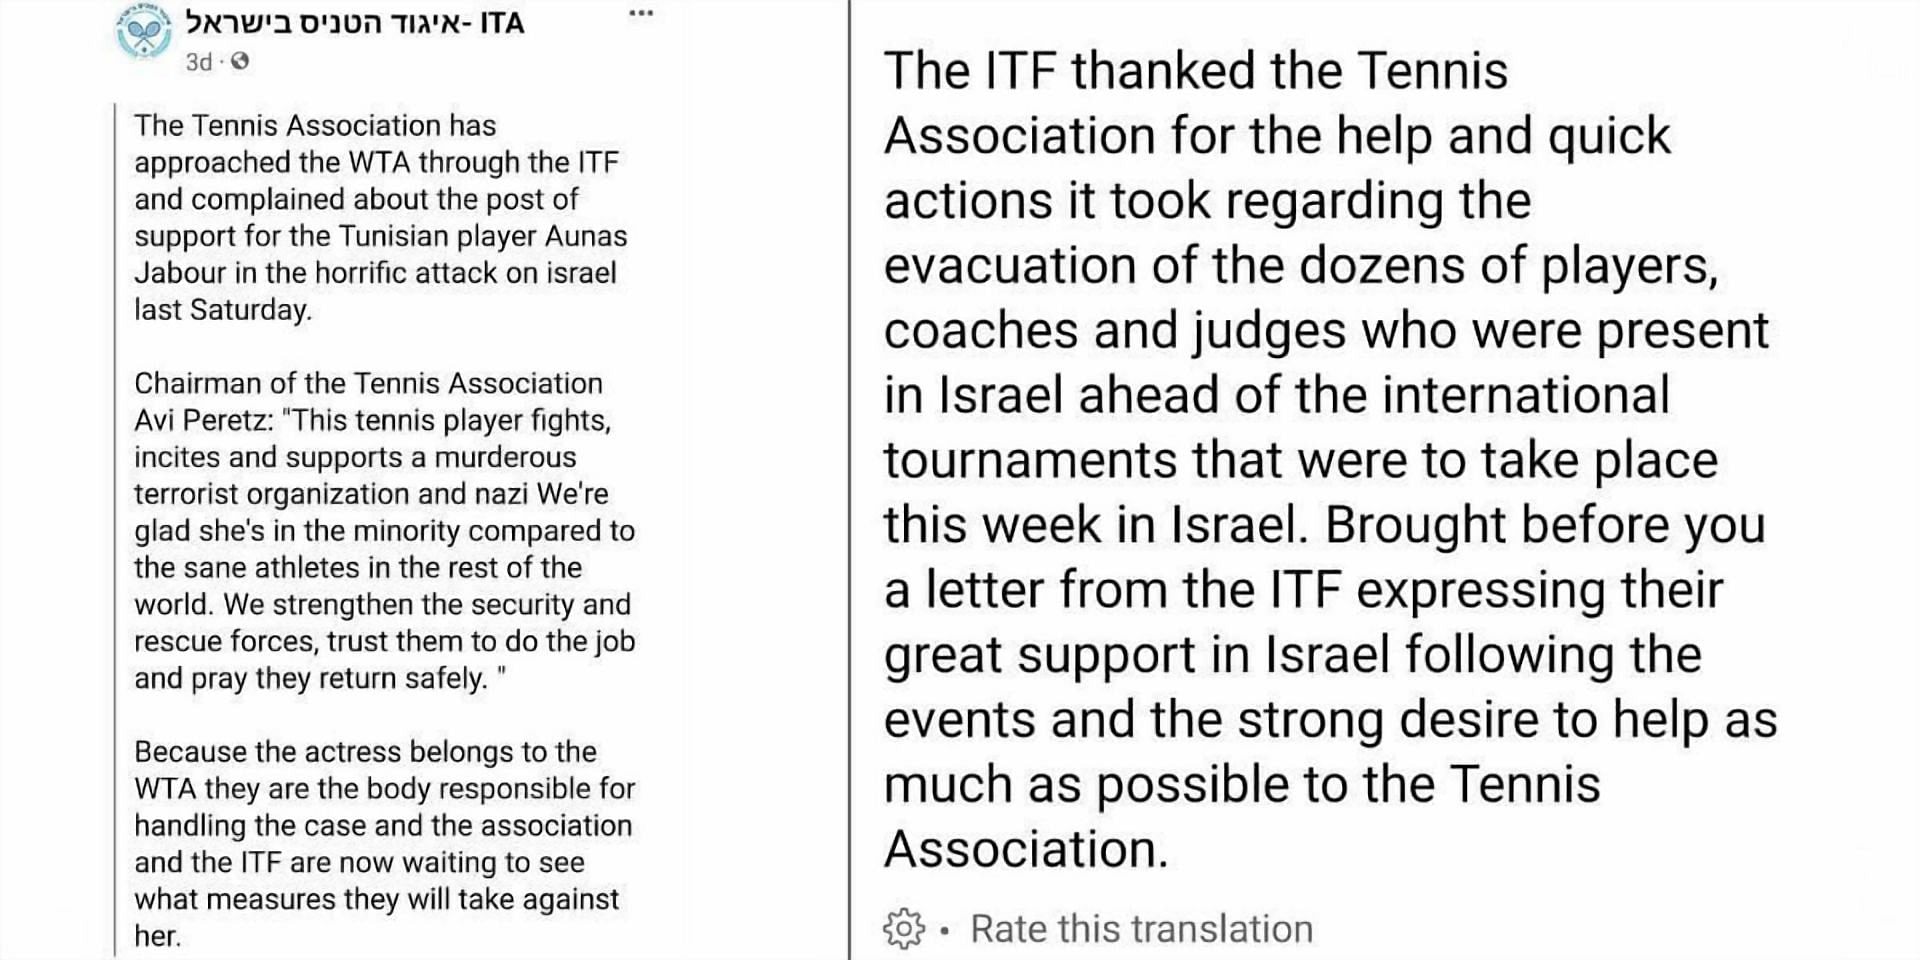 ITA statement via Facebook